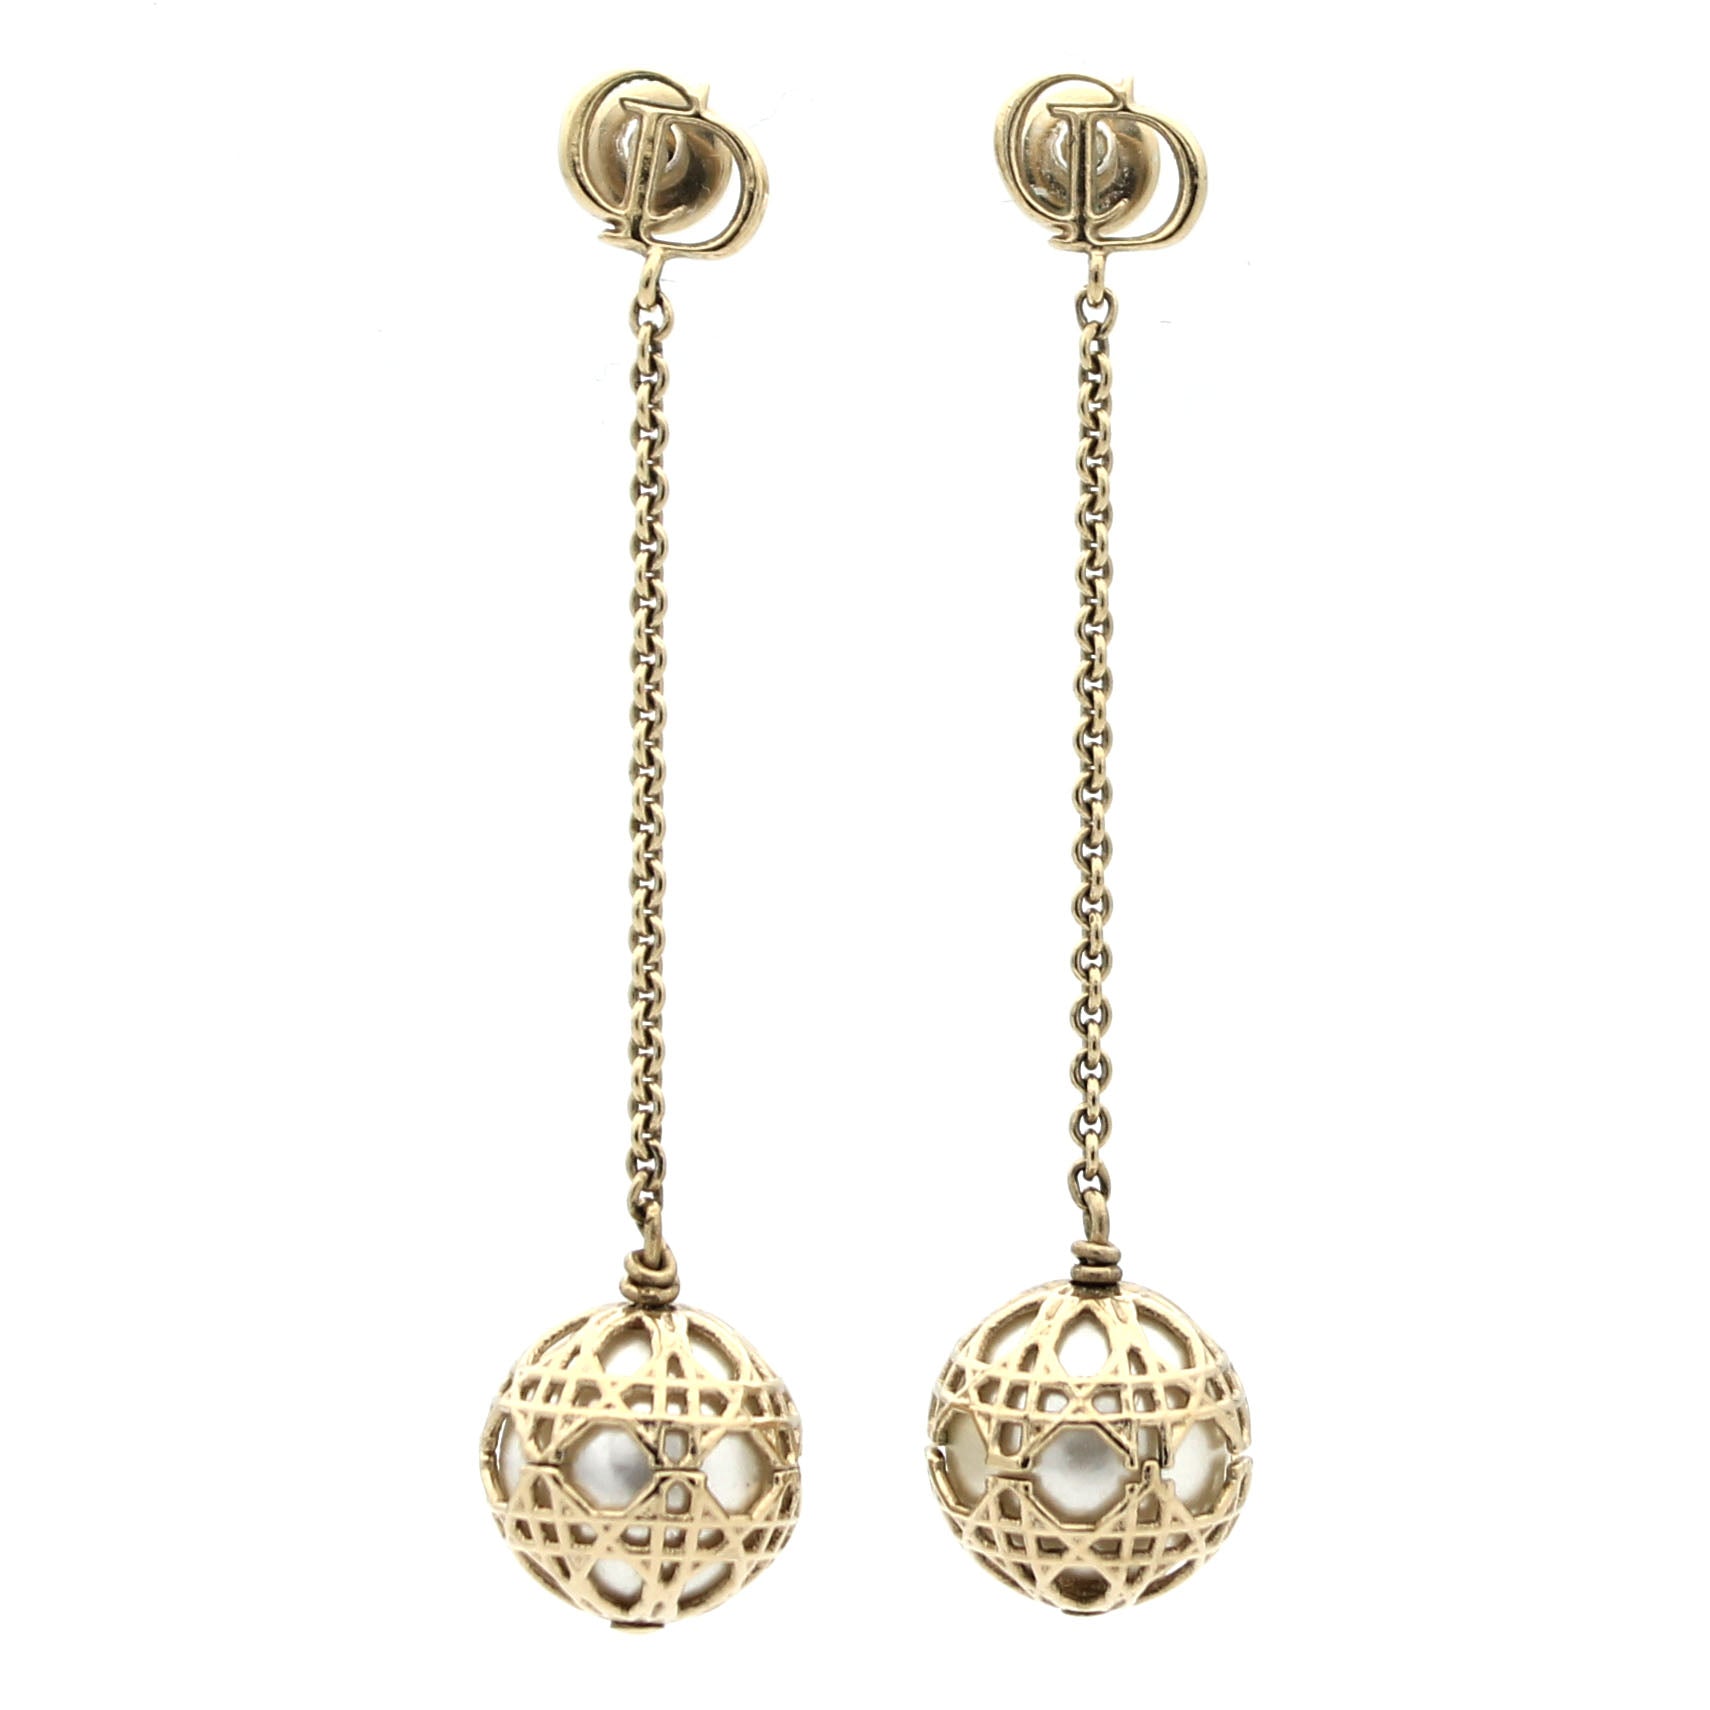 Christian Dior J039adior White Pearl Gold Tone Metal Dangle Earrings   eBay